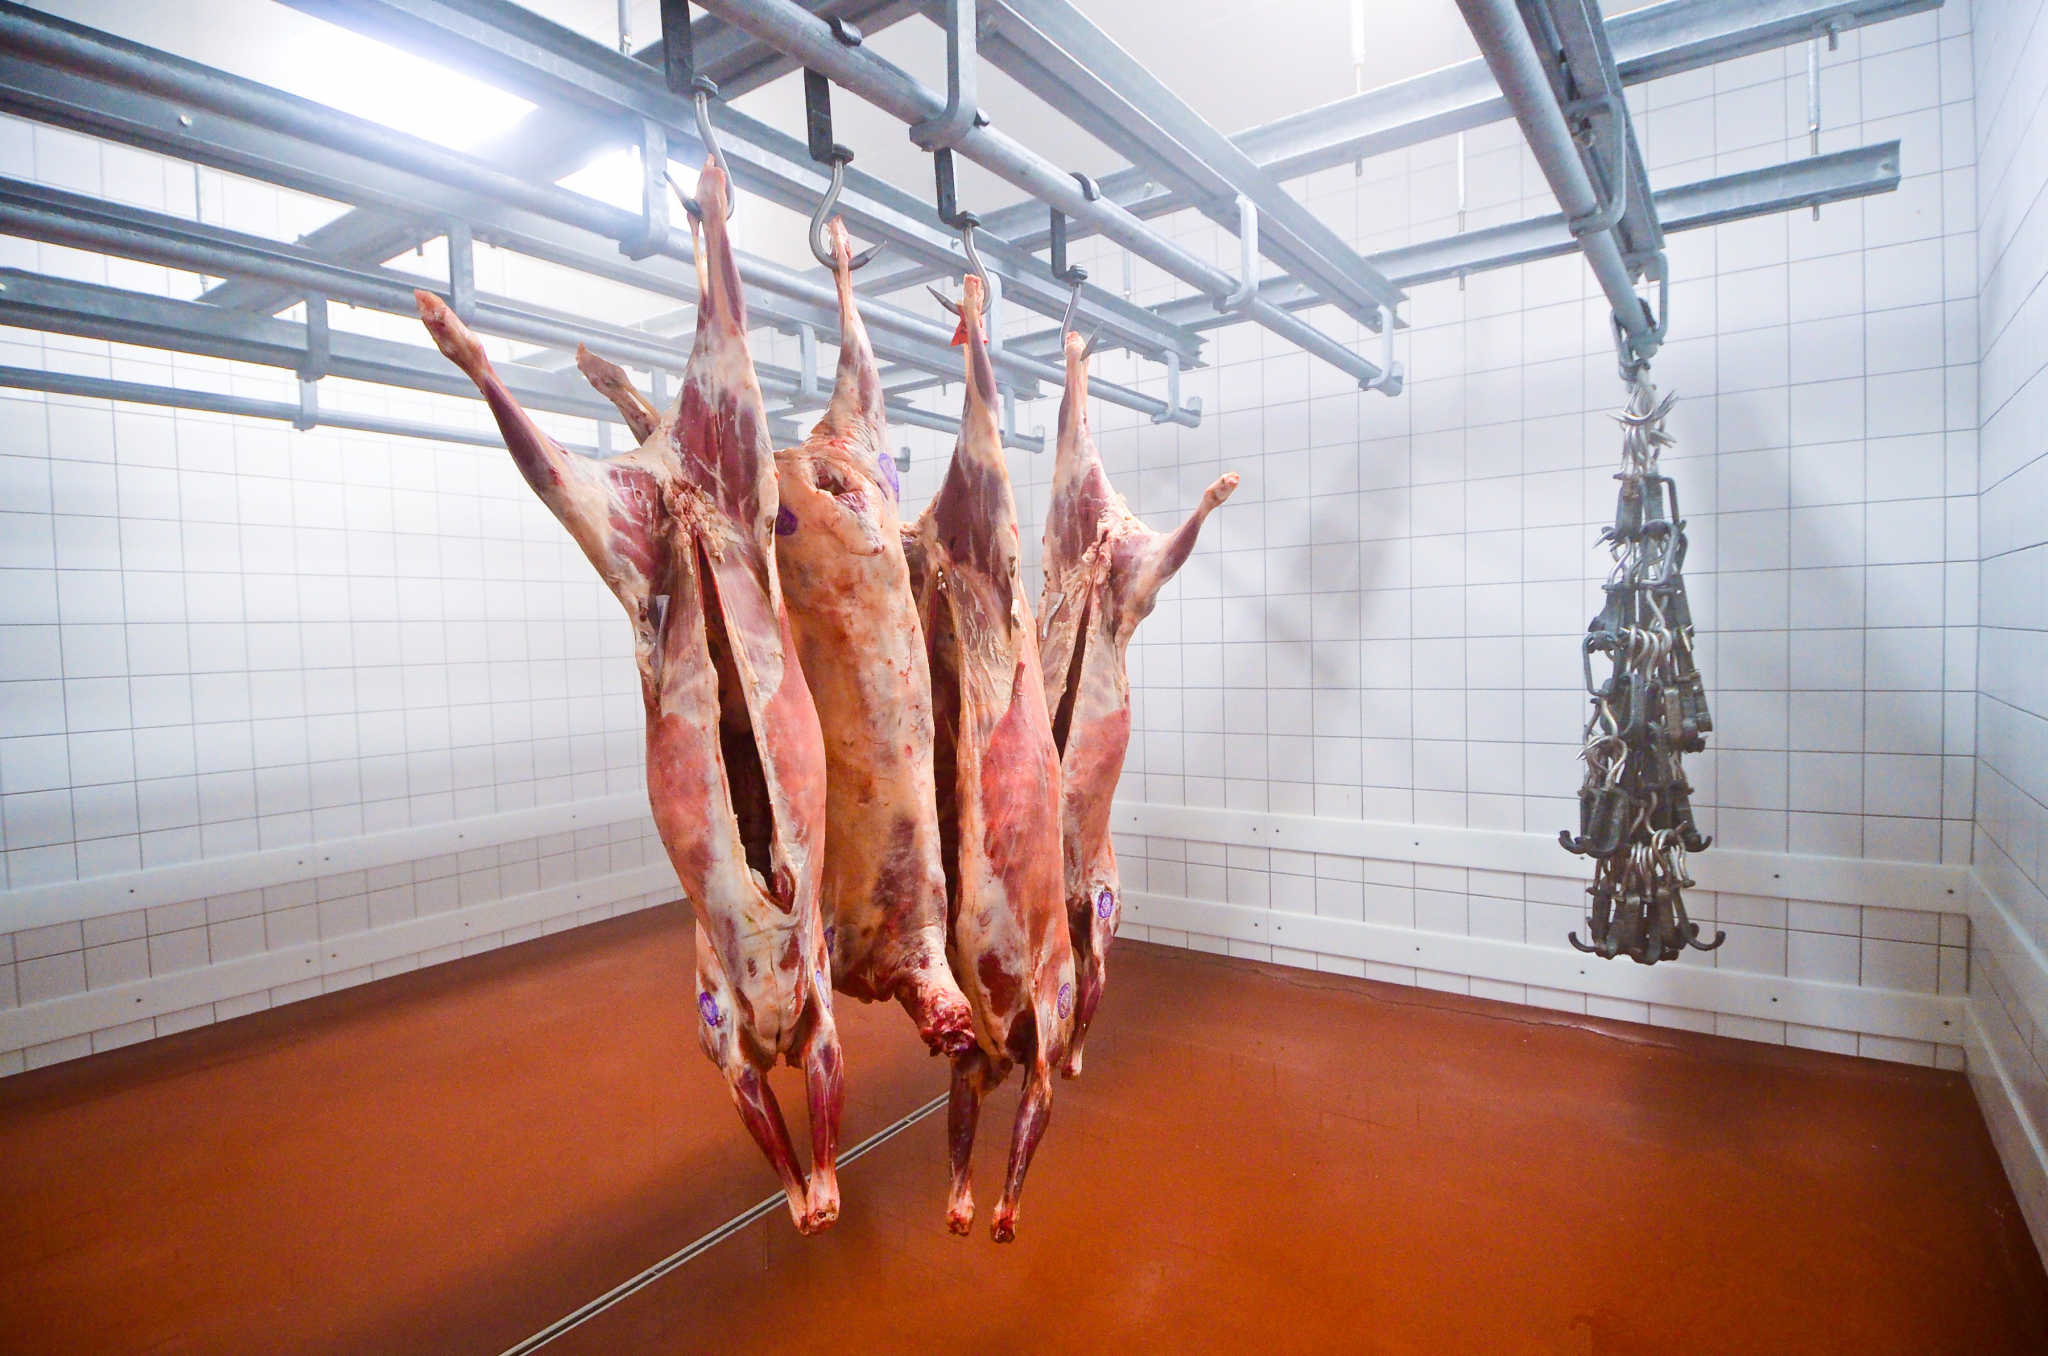 Обнаружены нарушения при производстве мяса под Юрьев-Польским